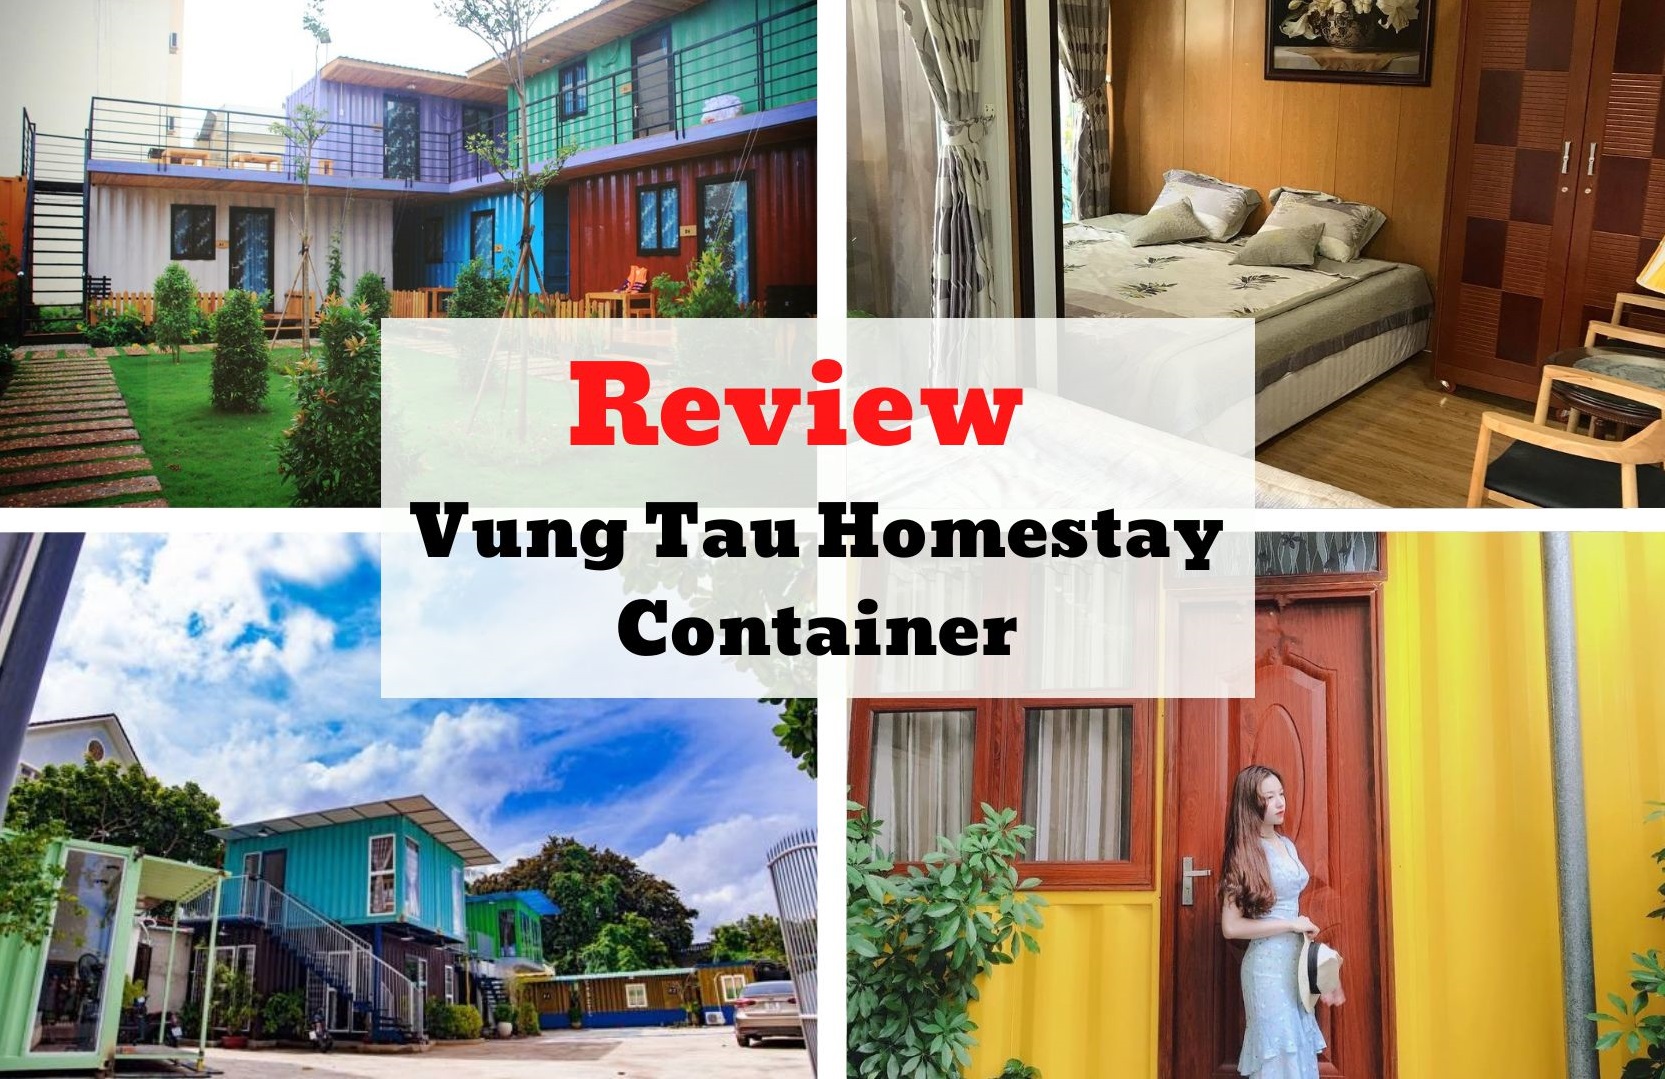 Review Vung Tau Homestay Container - Thiết kế ấn tượng, đa sắc màu